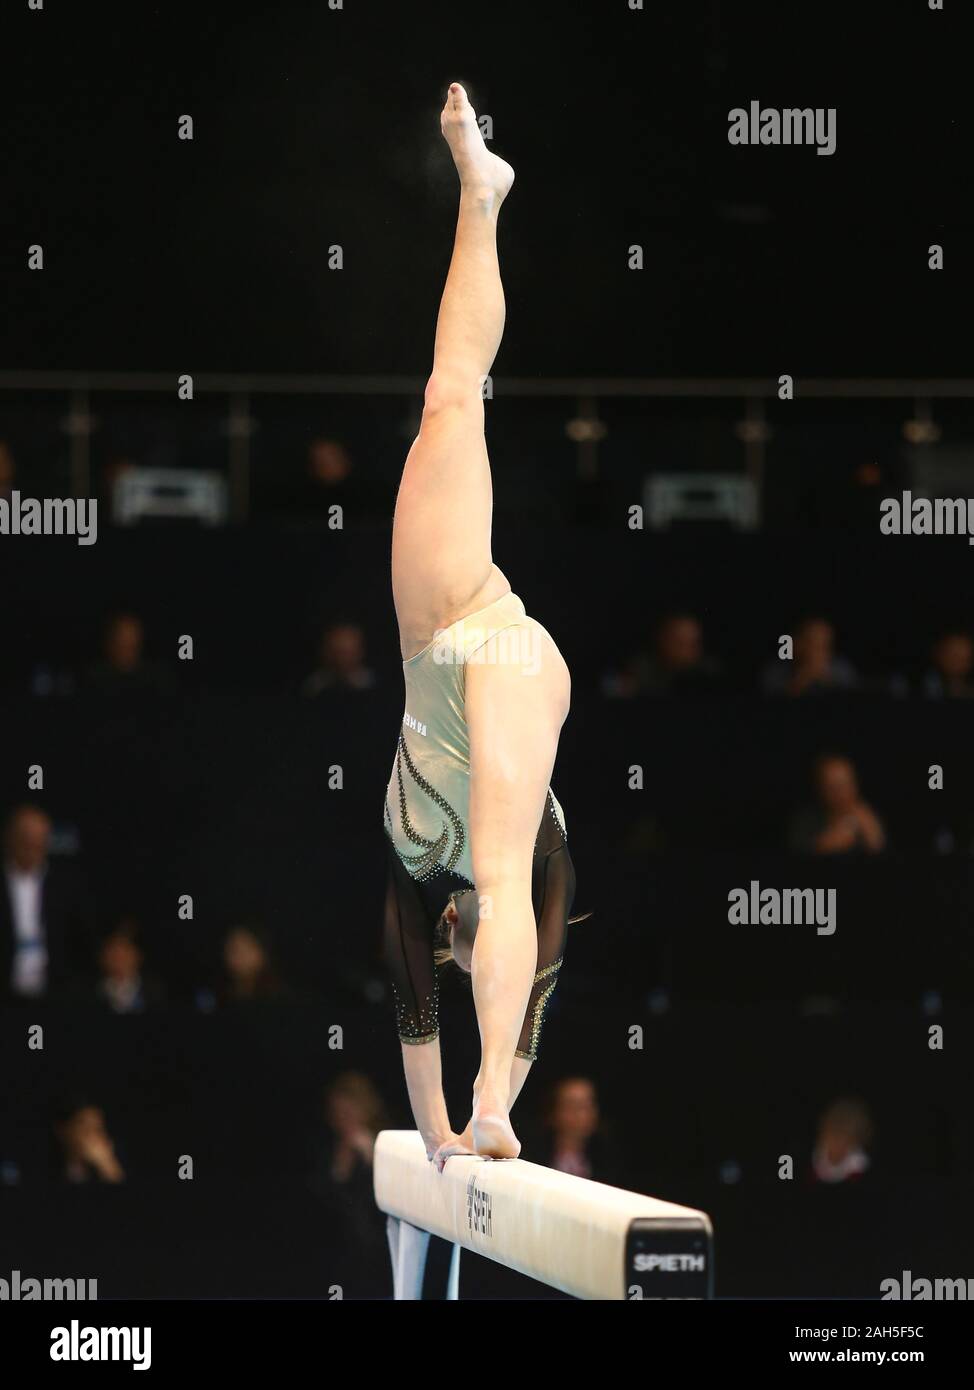 Stettin, Polen, 11. April 2019: Ana Derek von Kroatien konkurriert auf dem Schwebebalken während der künstlerischen Gymnastik Meisterschaften Stockfoto